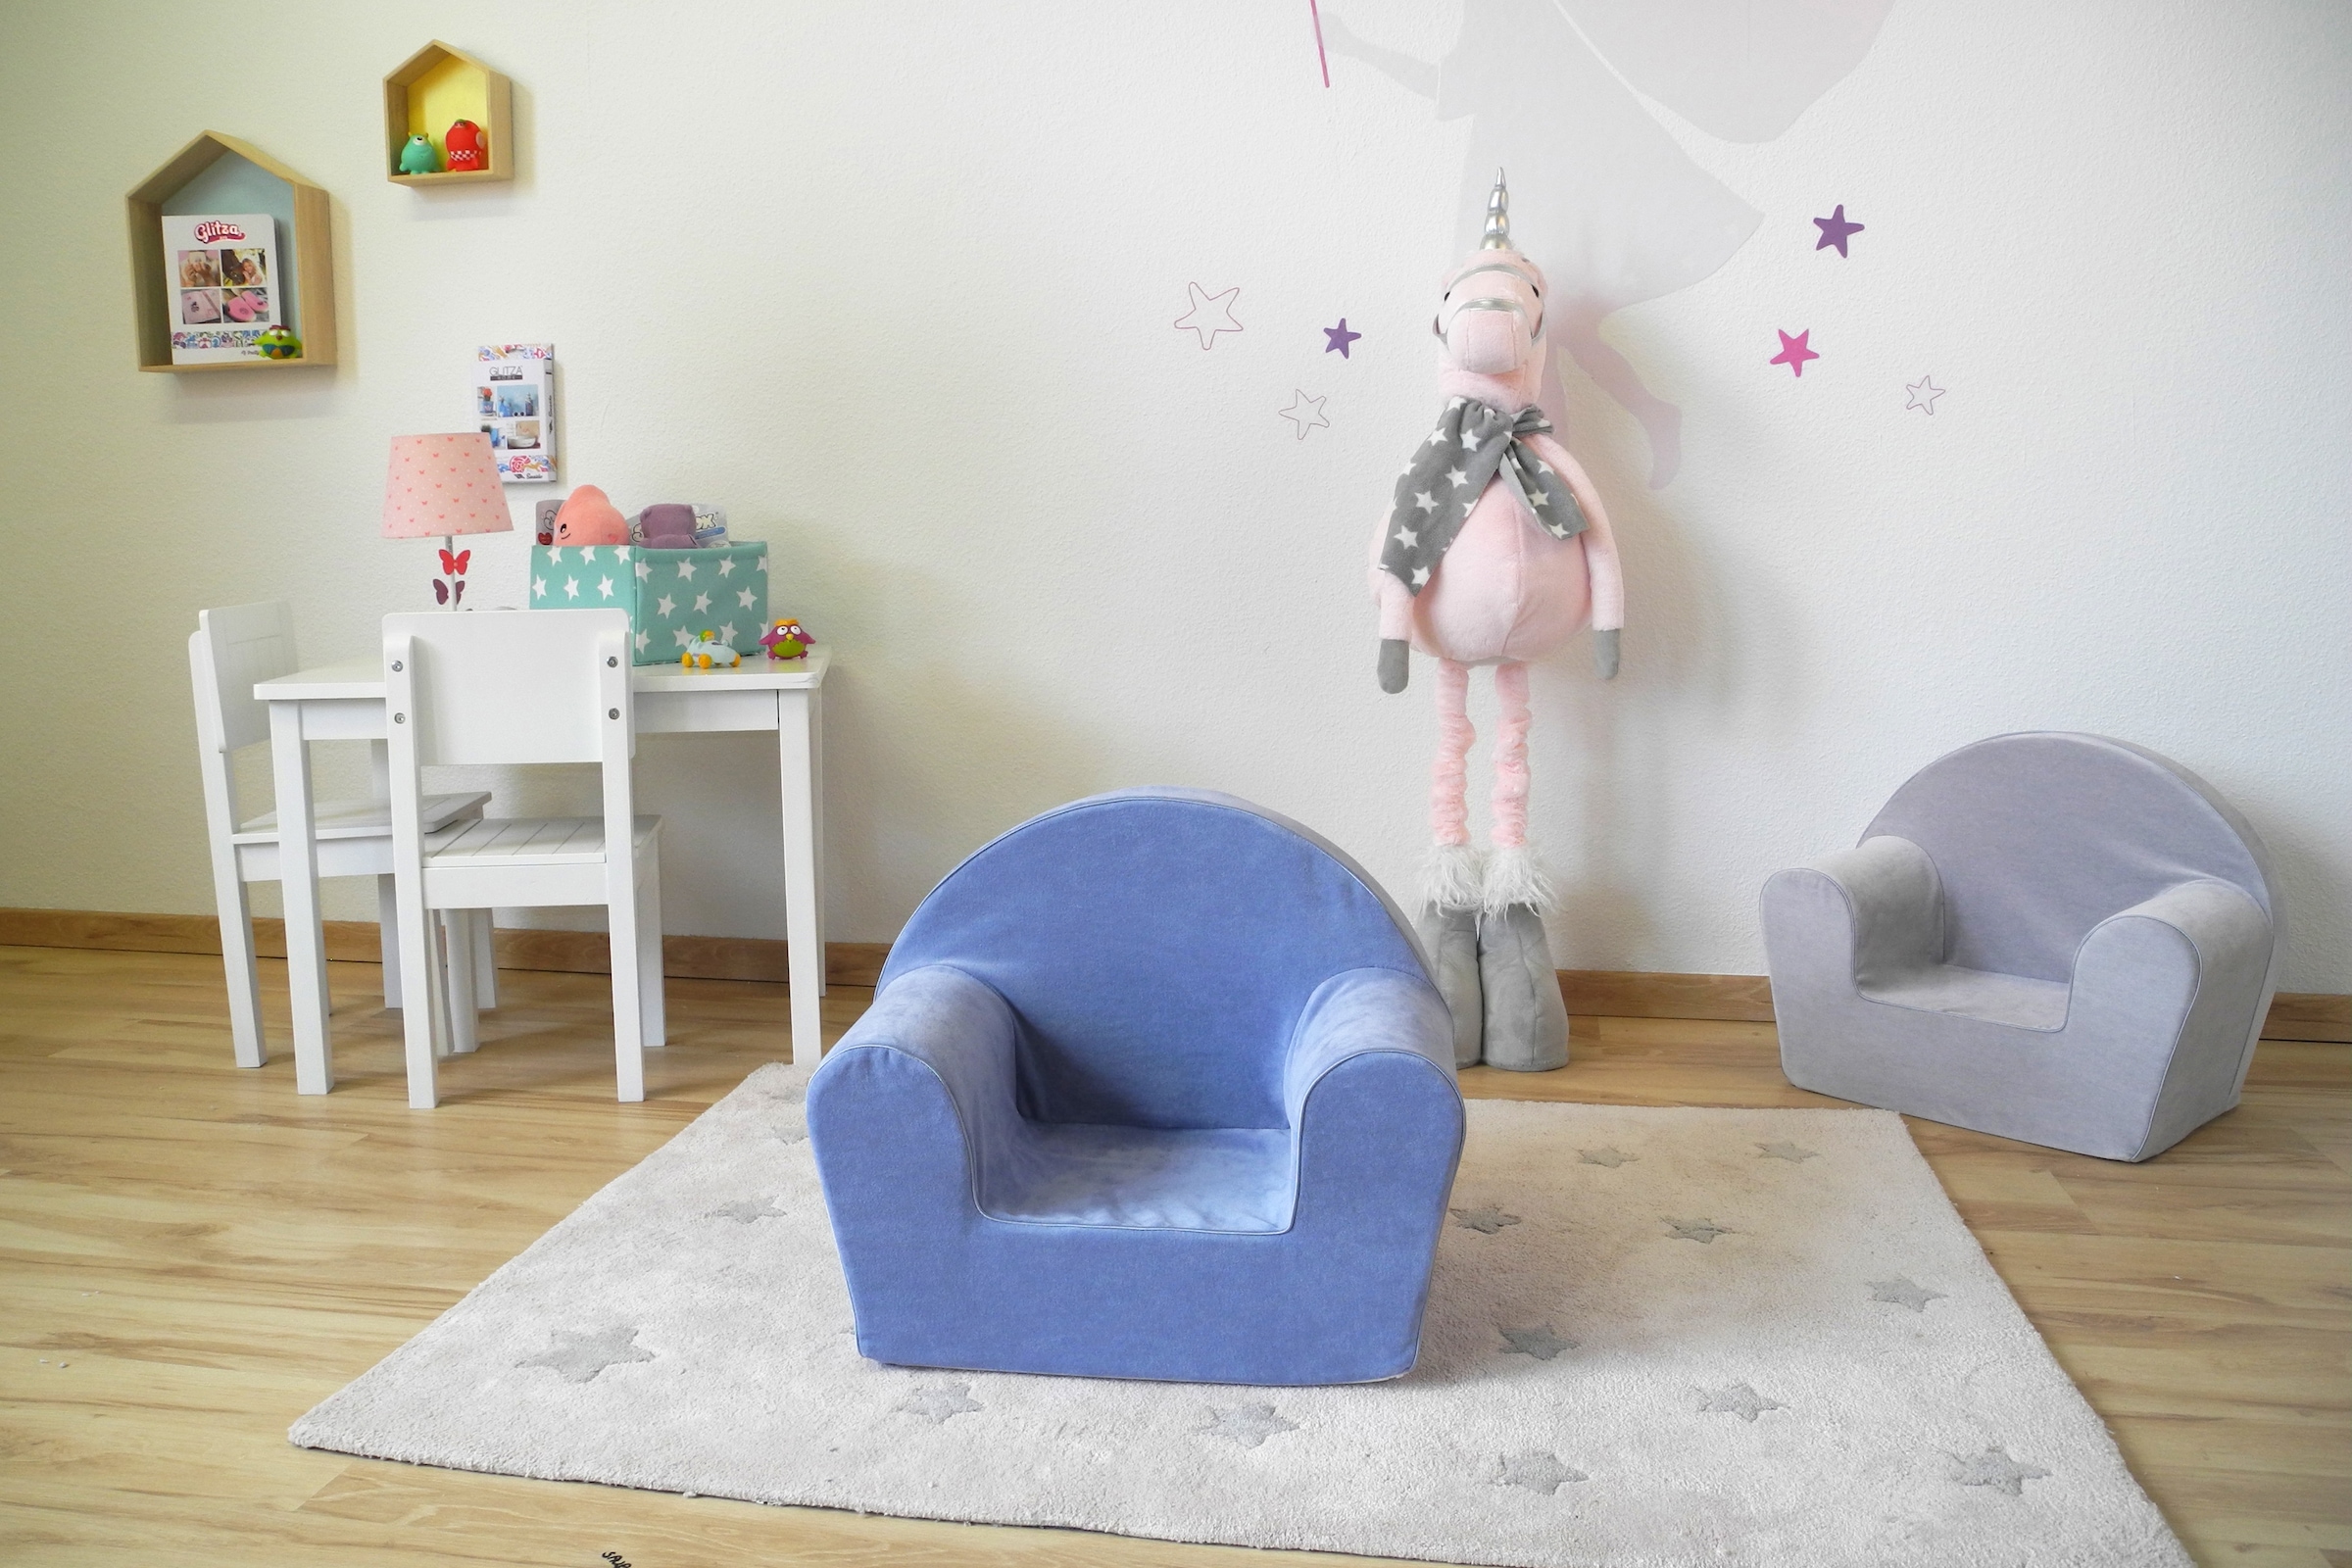 Knorrtoys® Sessel »Soft Blue«, für Kinder; Made in Europe